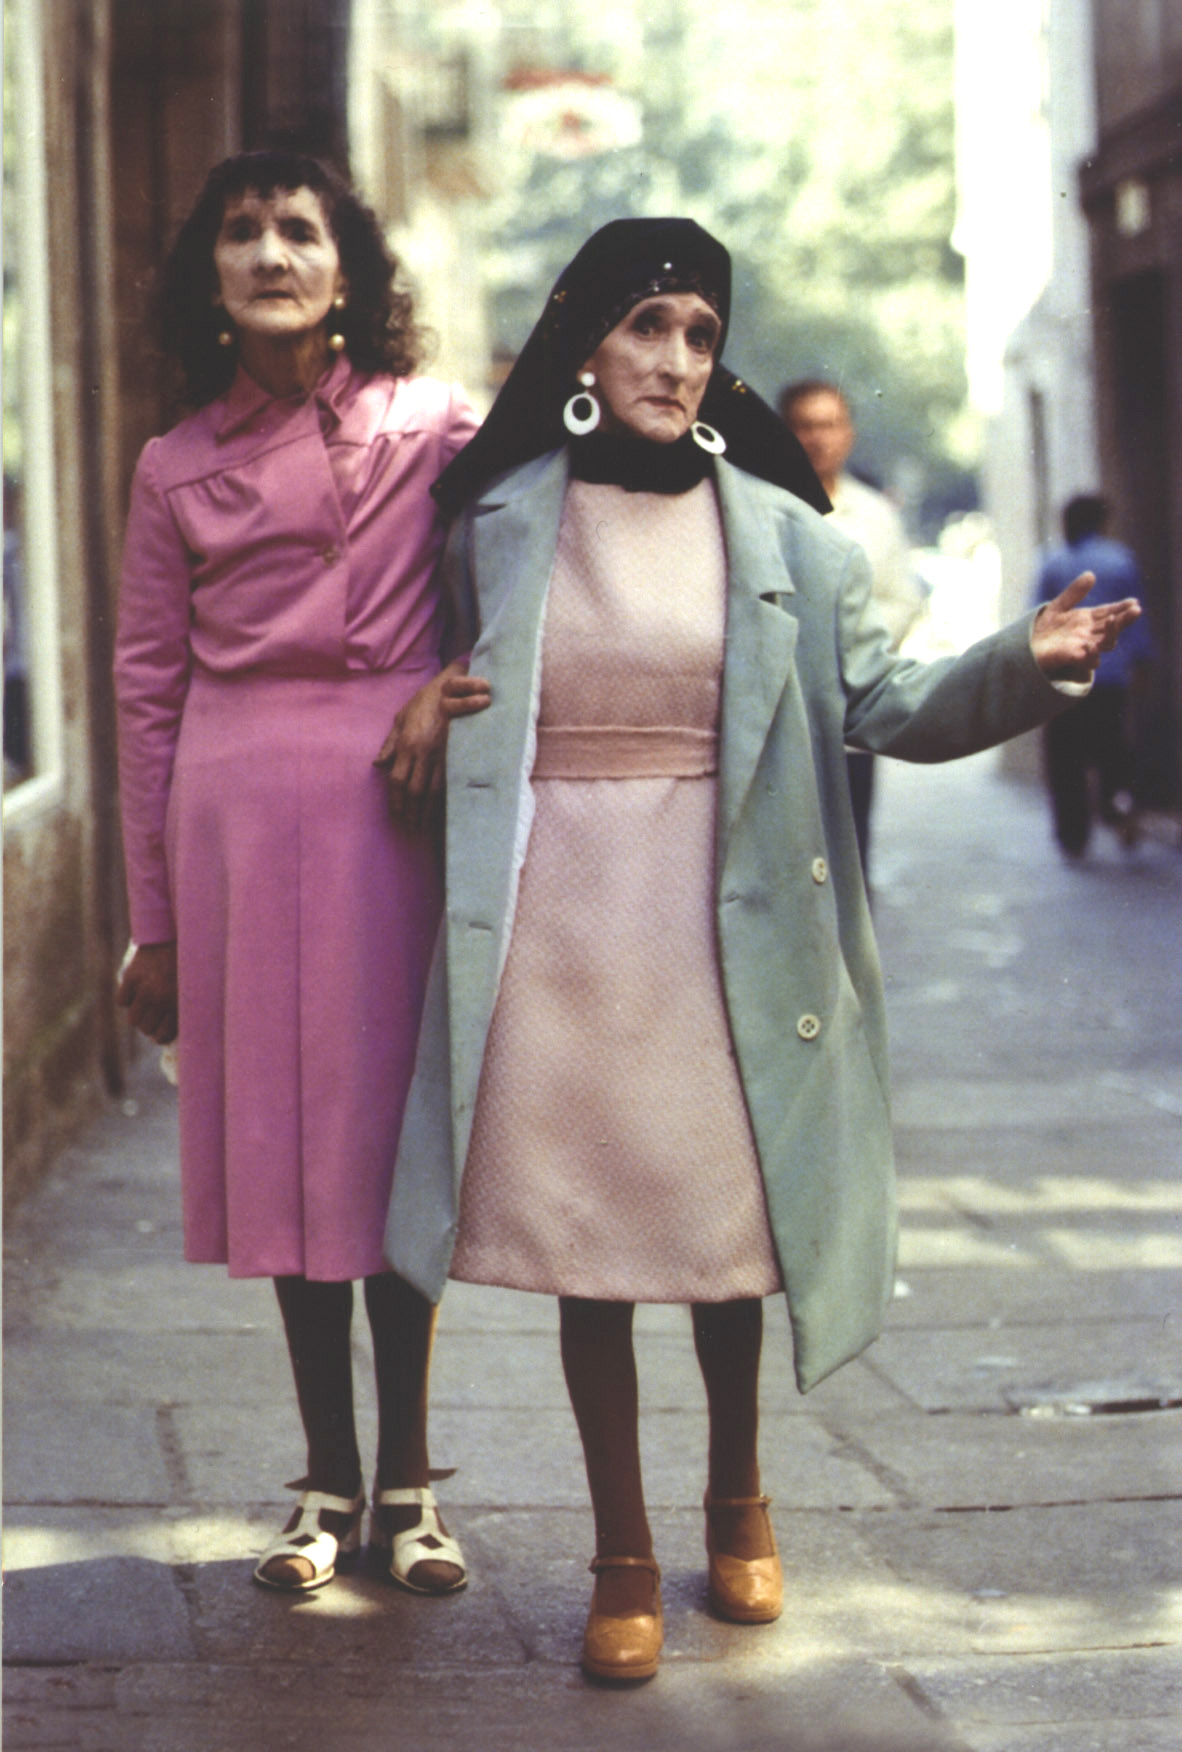 Coralia y Maruxa Fandiño, 'Las Marías', pasean por Santiago de Compostela en 1961 en una imagen atribuida a Xosé Guitián.